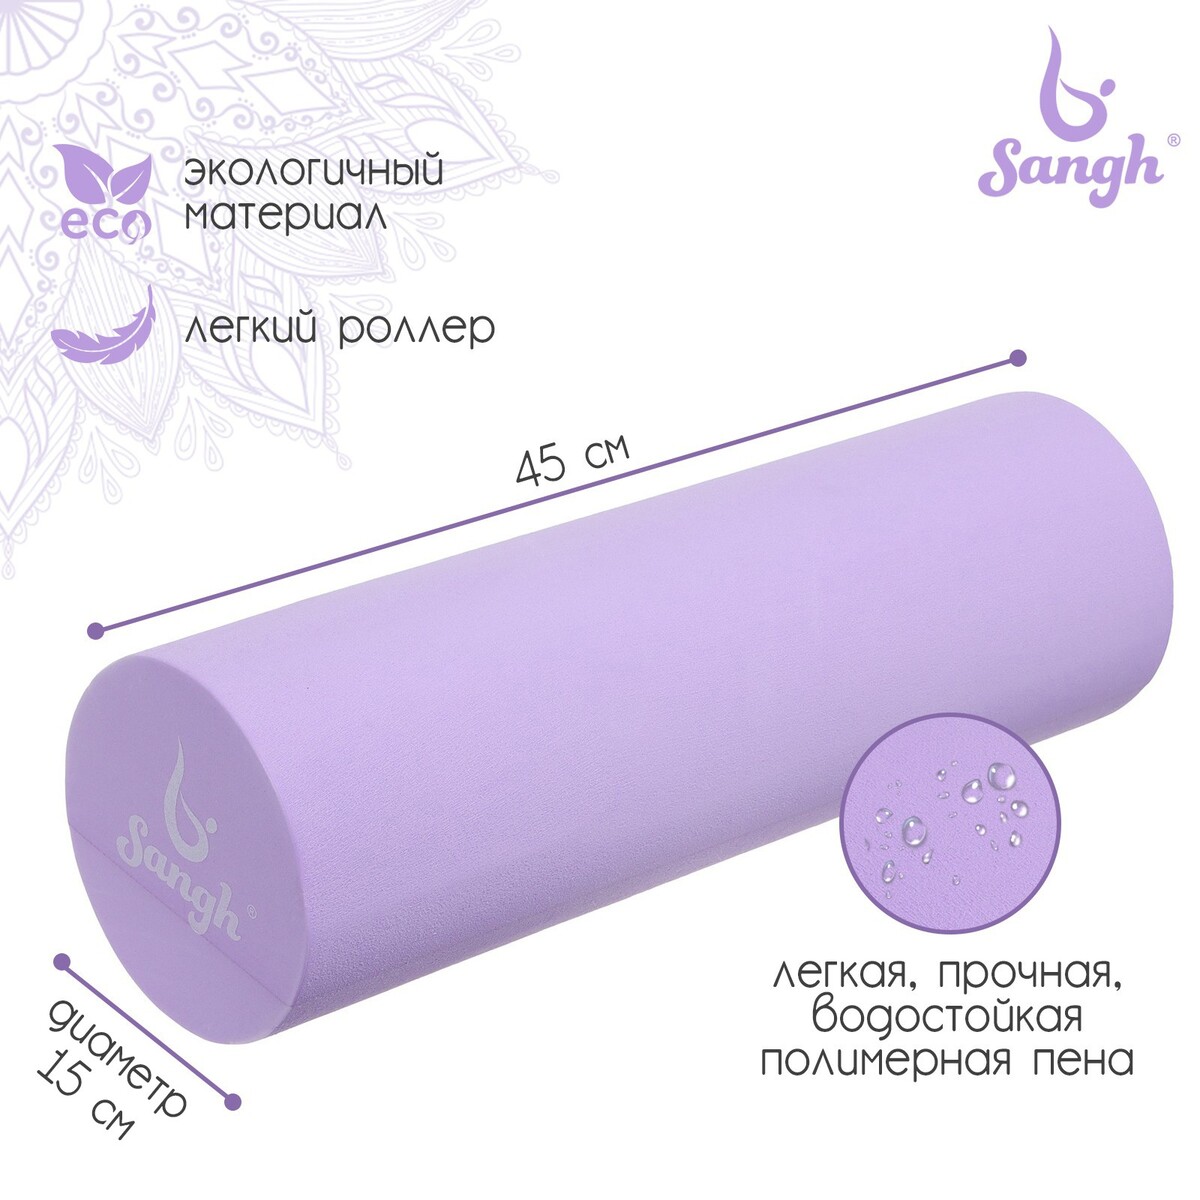 Ролик массажный sangh, 45х15 см, цвет фиолетовый ролик для йоги sportex 60x15cm эпп литой d34362